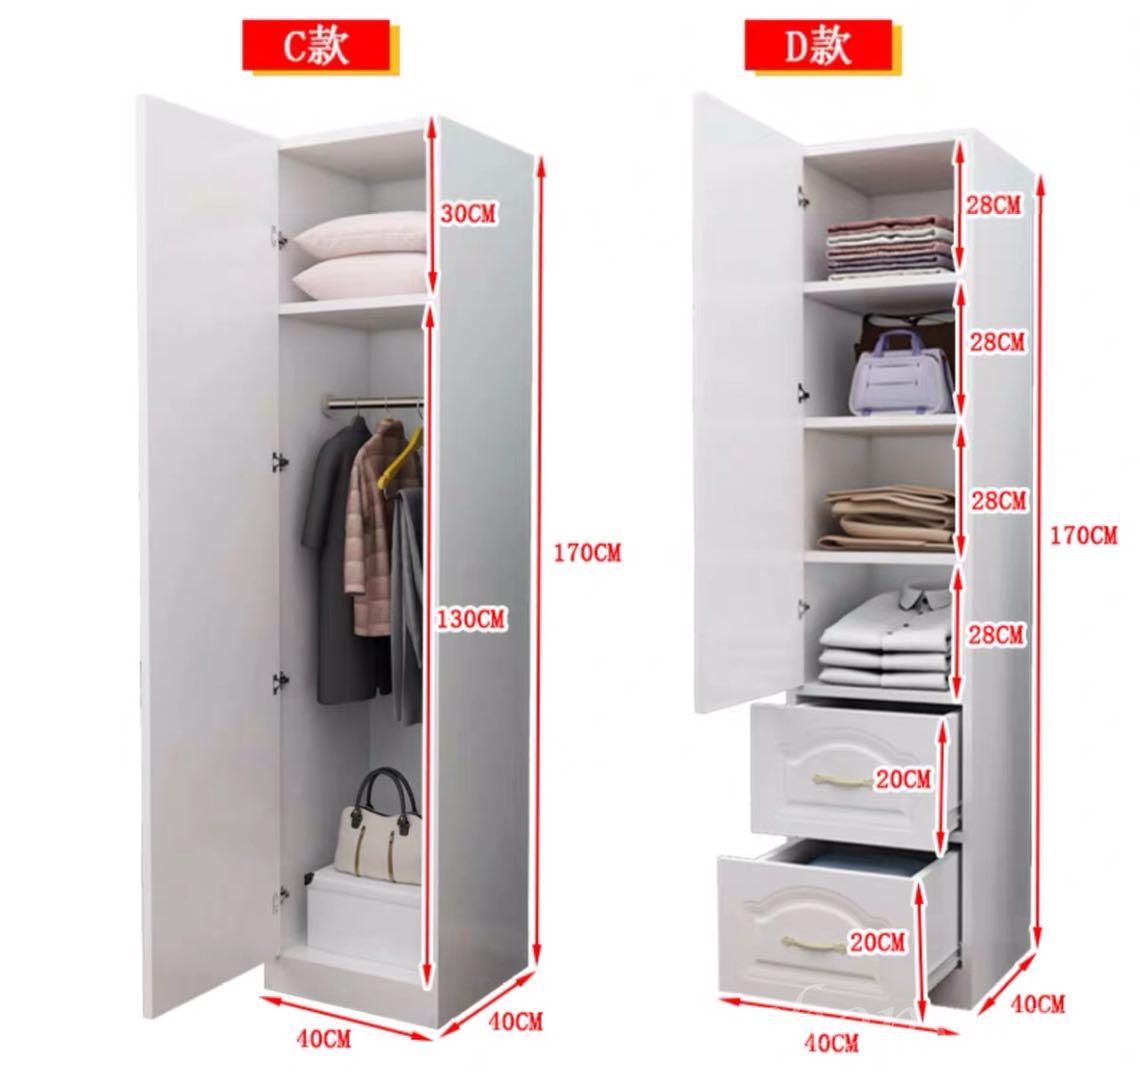 純白系列  單門衣櫃 40cm (IS1445)